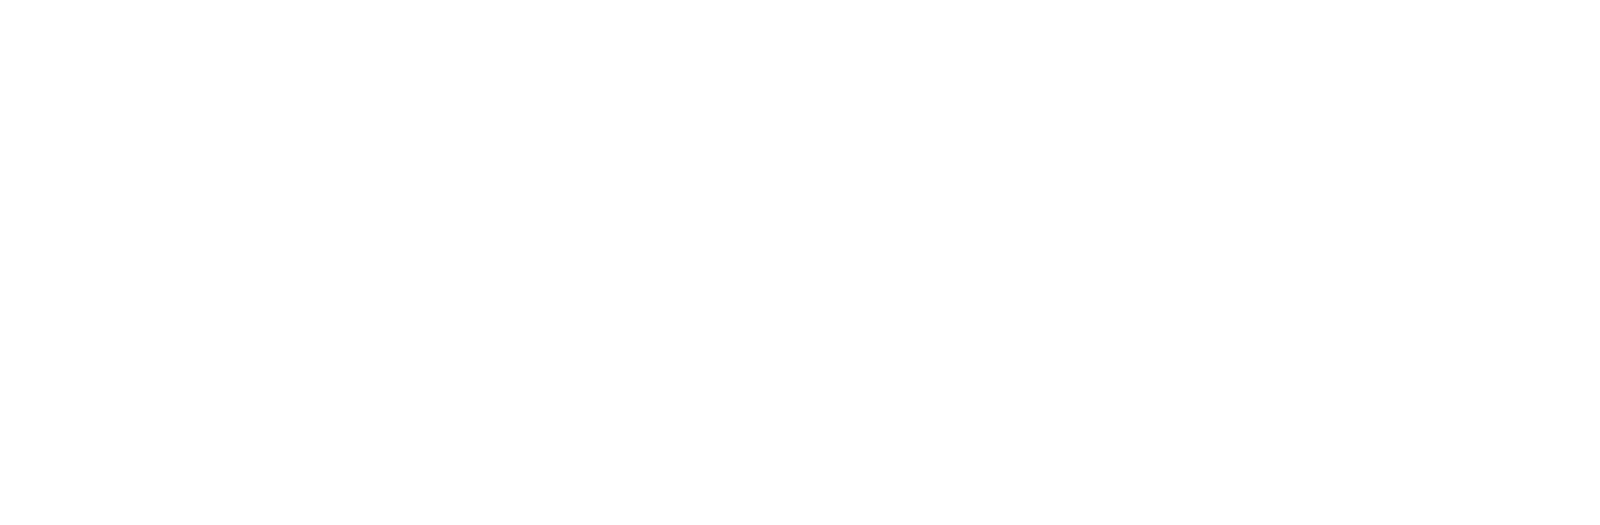 Oxeylo_white_logo